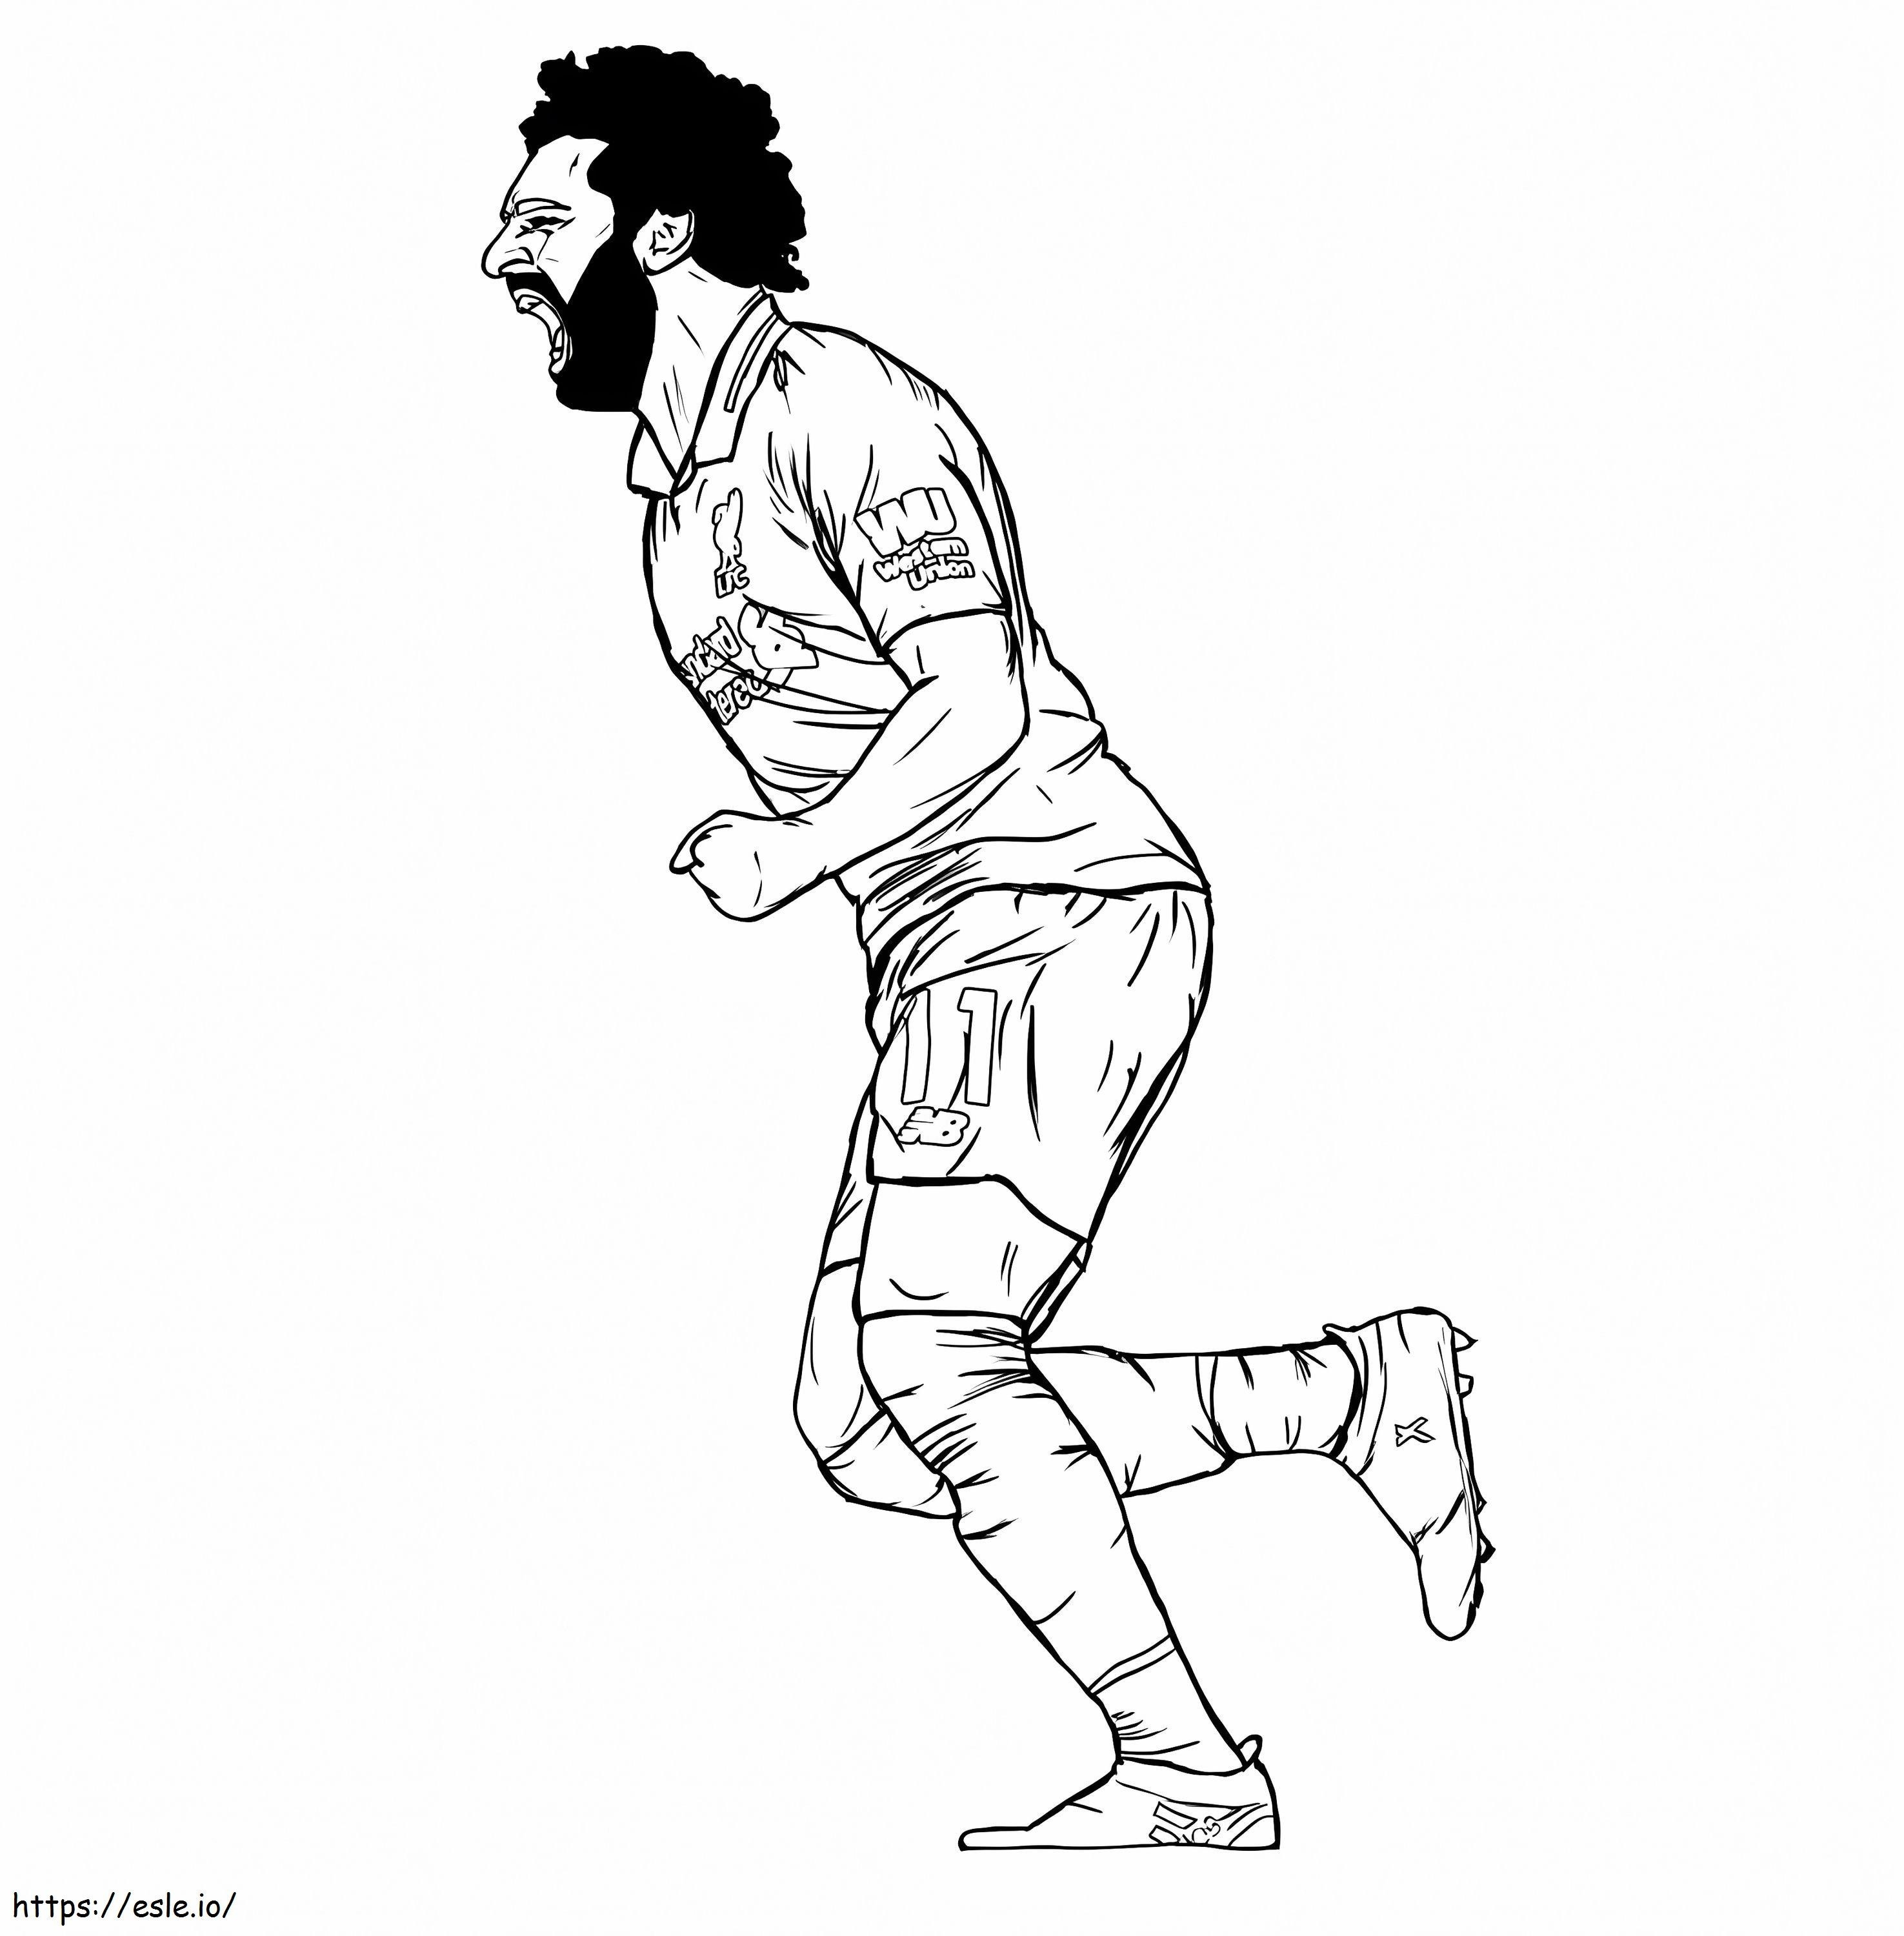 Mohammed Salah 7 kleurplaat kleurplaat